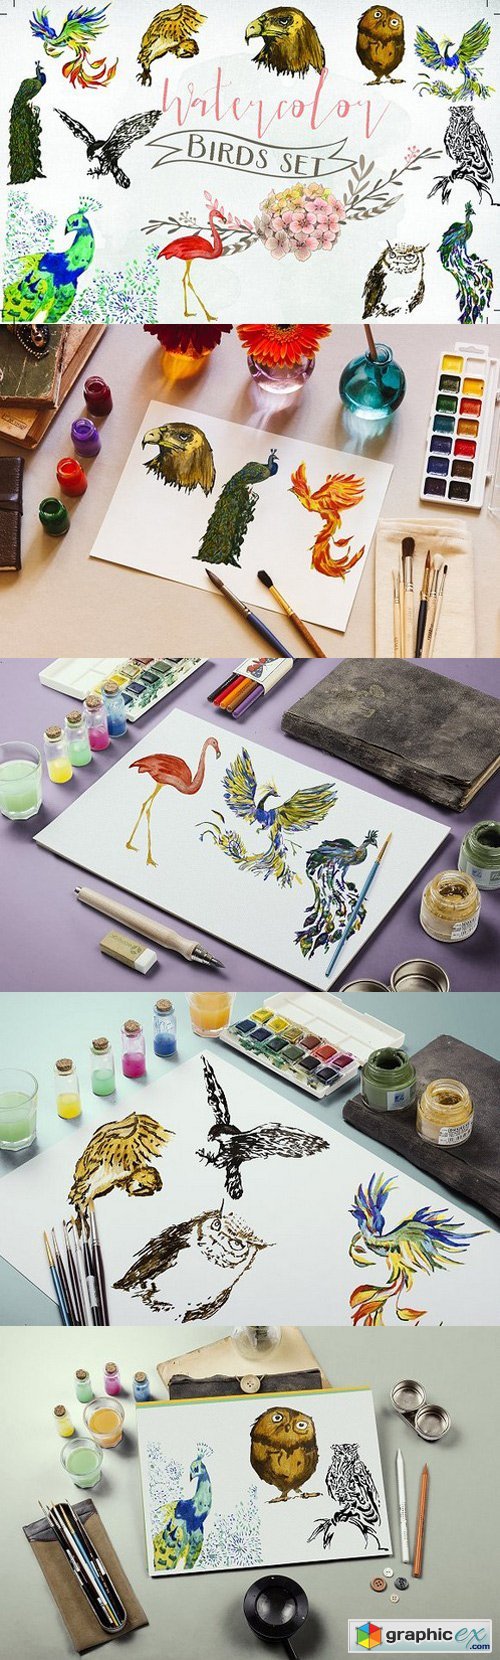 Watercolor birds set